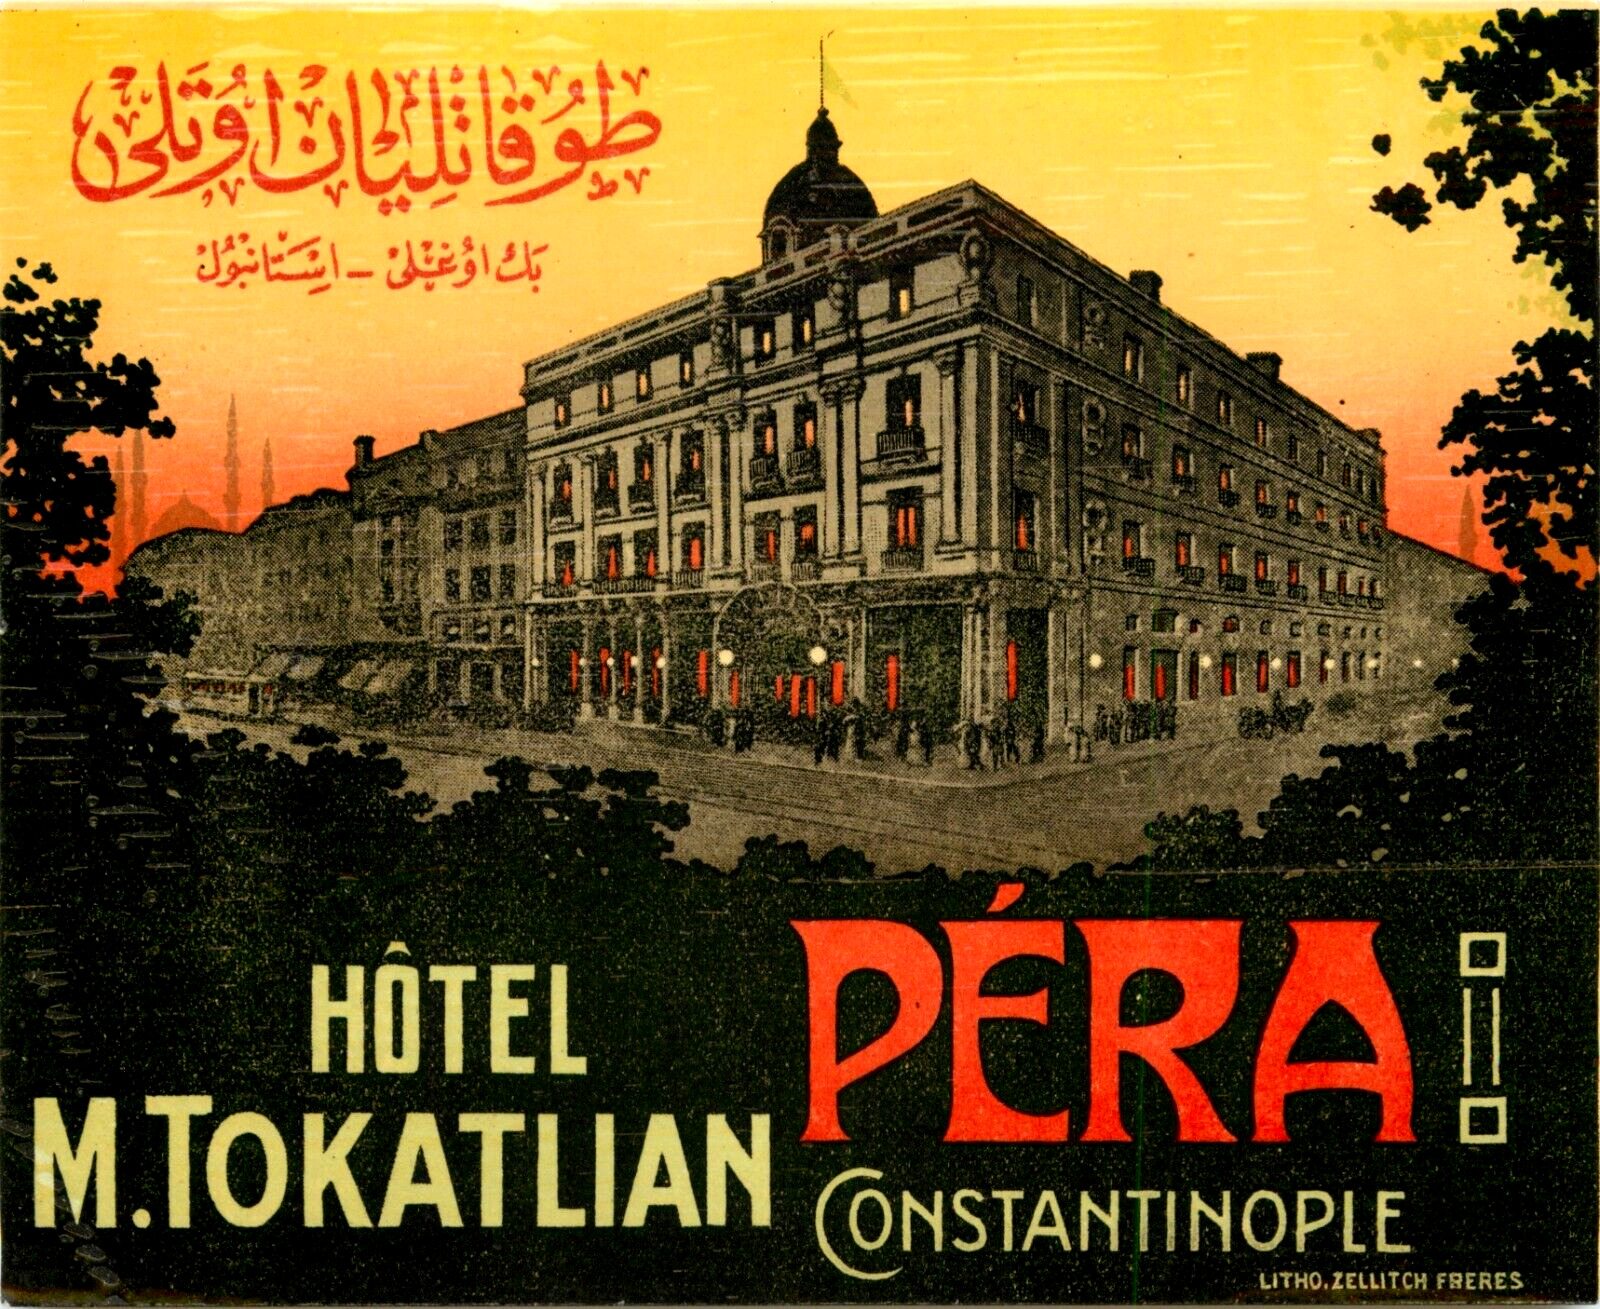 Hotel Tokatlian ~PERA - CONSTANTINOPLE~ Historc & Scarce Luggage Label, c. 1925